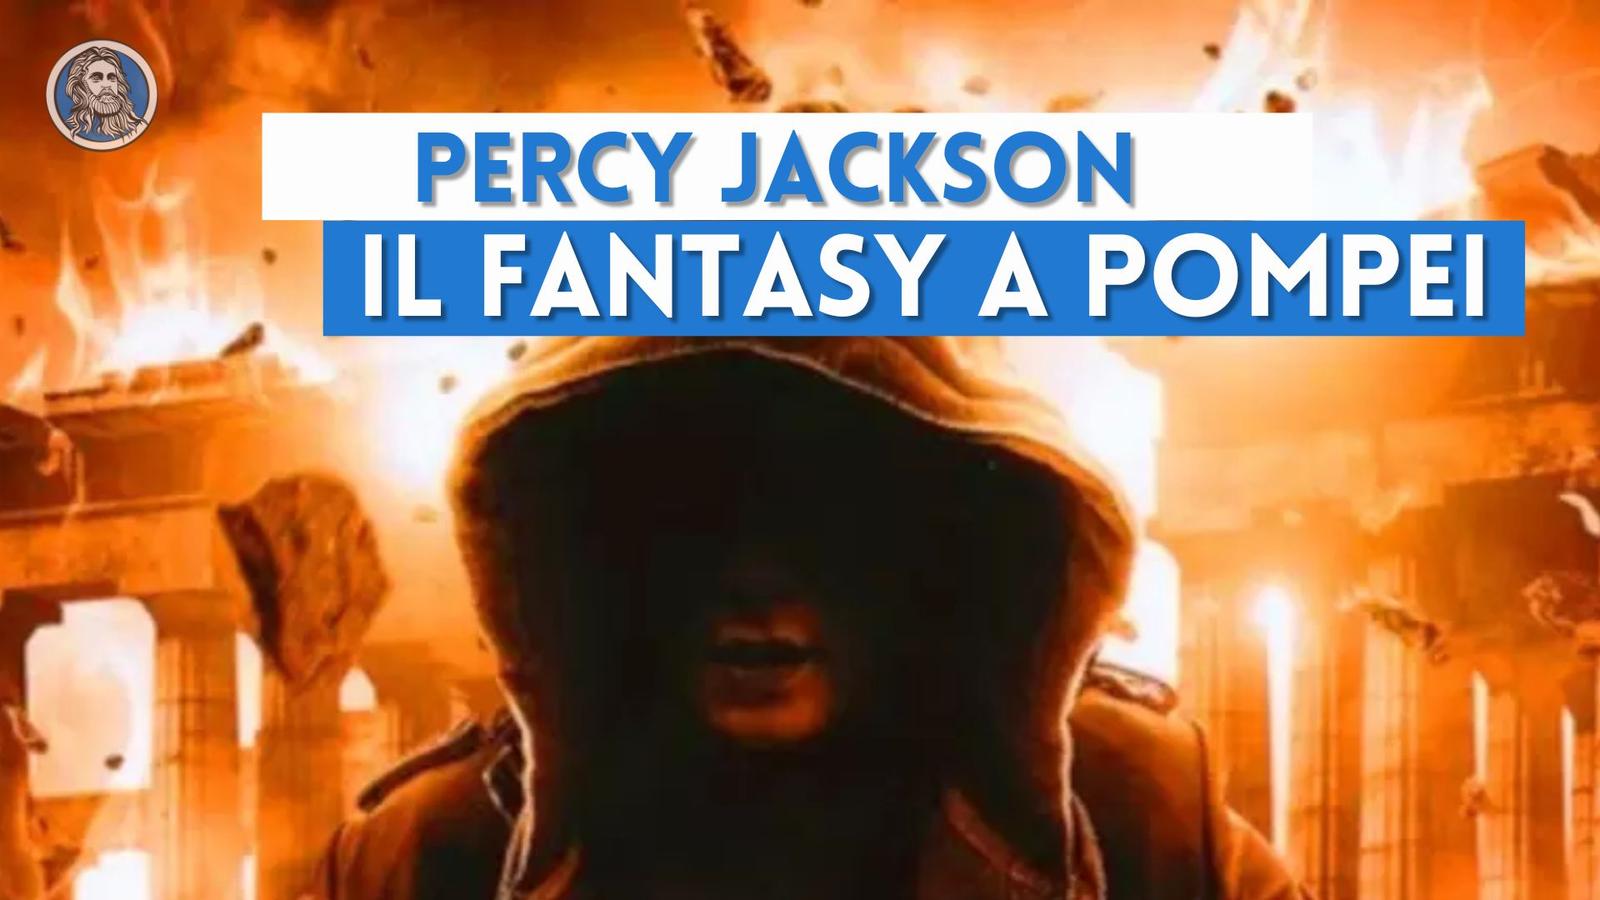 Percy Jackson e Pompei: le storie fantasy ambientate attorno al Vesuvio